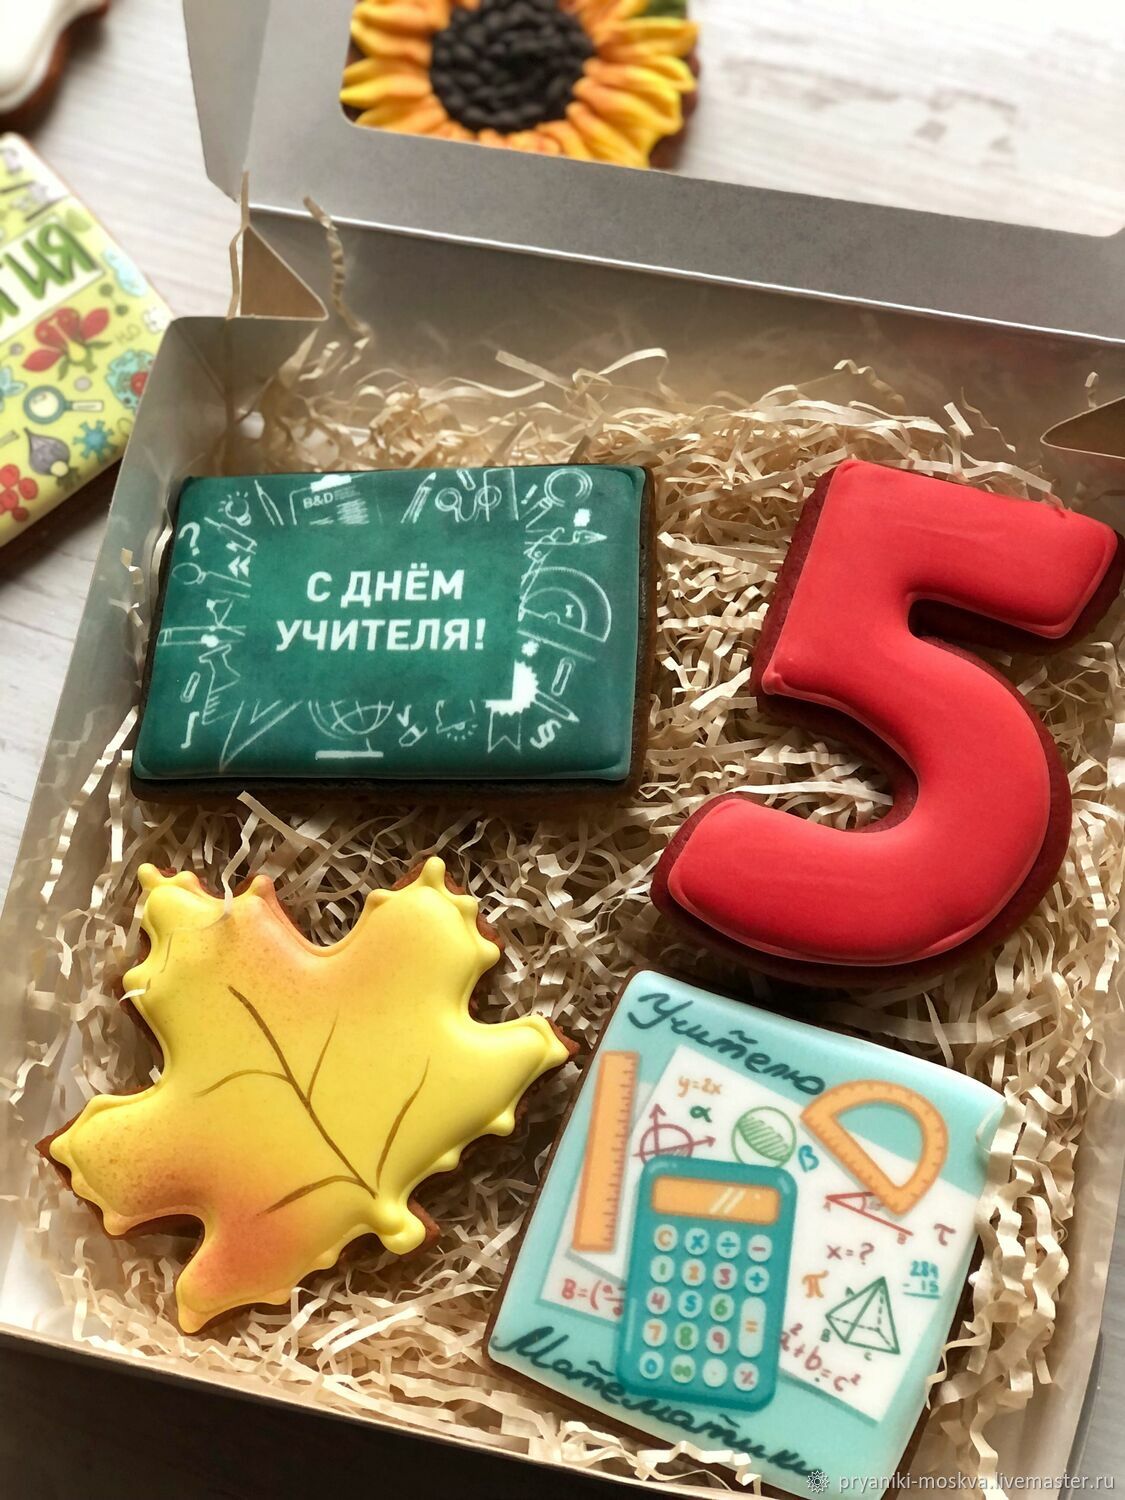 Подарок учителю математики на день учителя от класса: идеи что подарить и как оформить (45 фото)